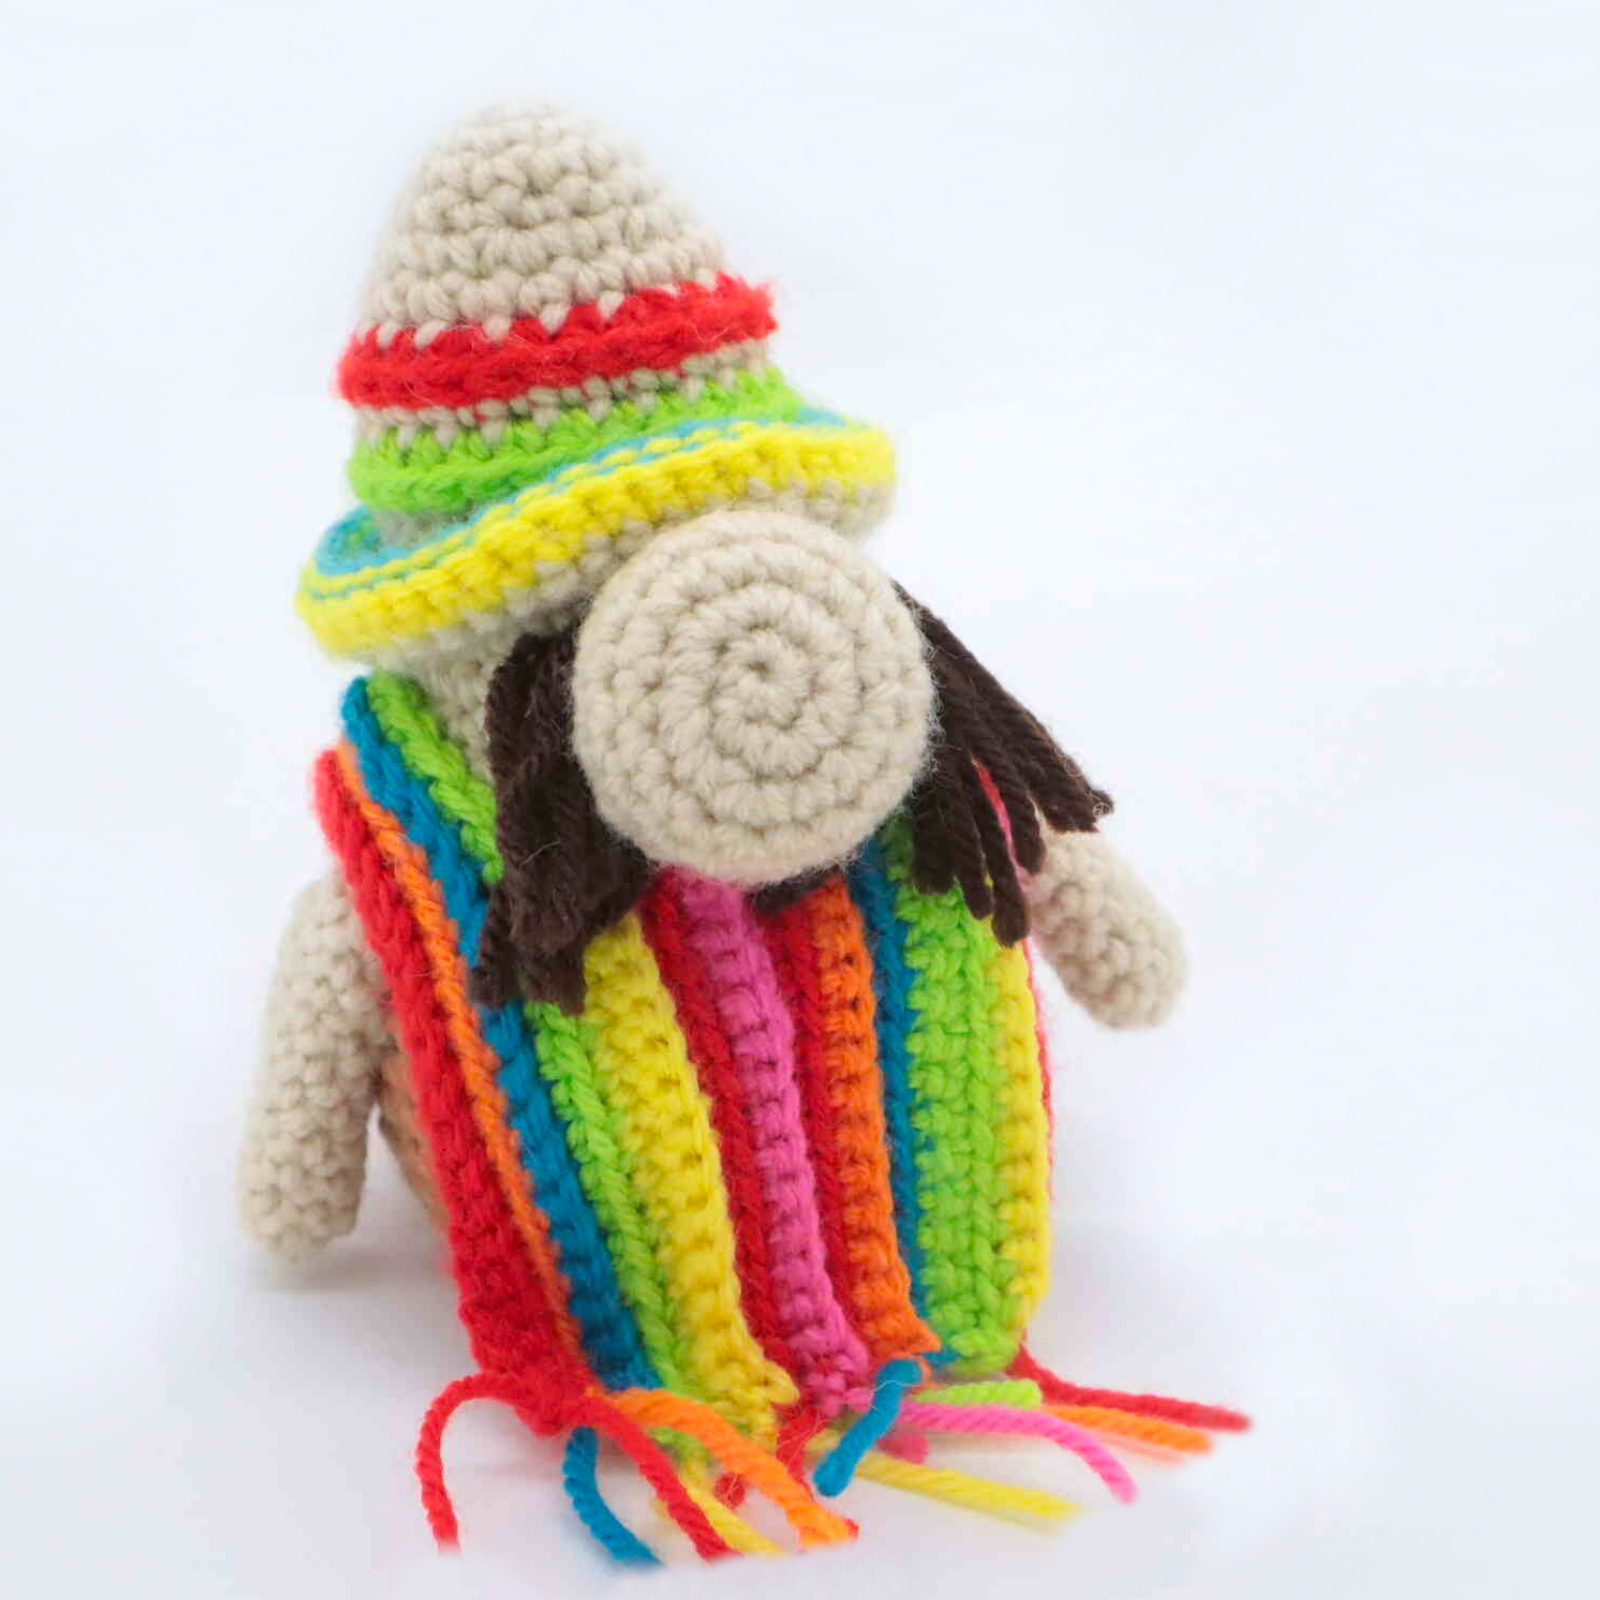 Free mexican gnome amigurumi crochet pattern